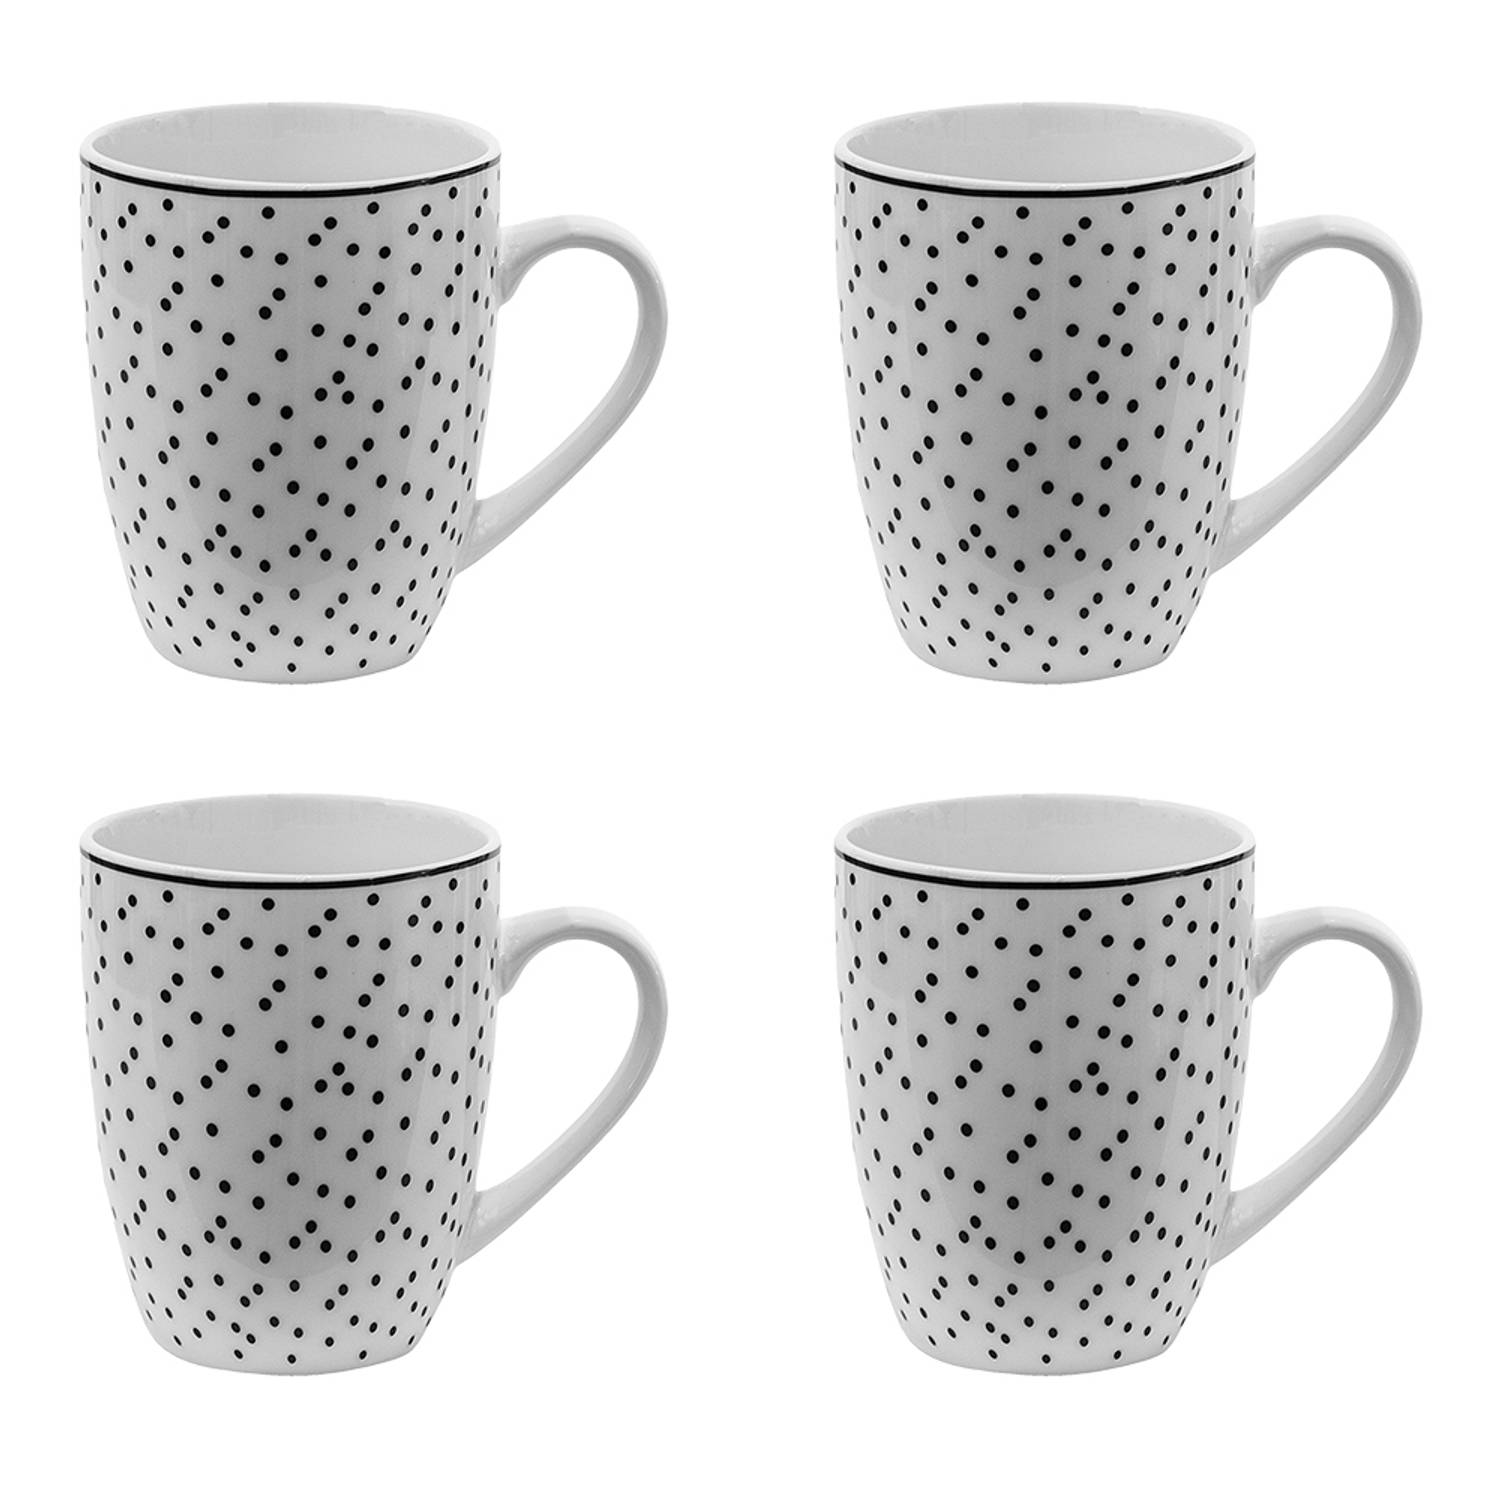 HAES DECO - Mokken set van 4 - formaat 12x8x10 cm / 350 ml - kleuren Wit / Zwart - Bedrukt met Zwarte Stippen - Collectie: Small Dots - Mokkenset, Koffiemok, Koffiebeker